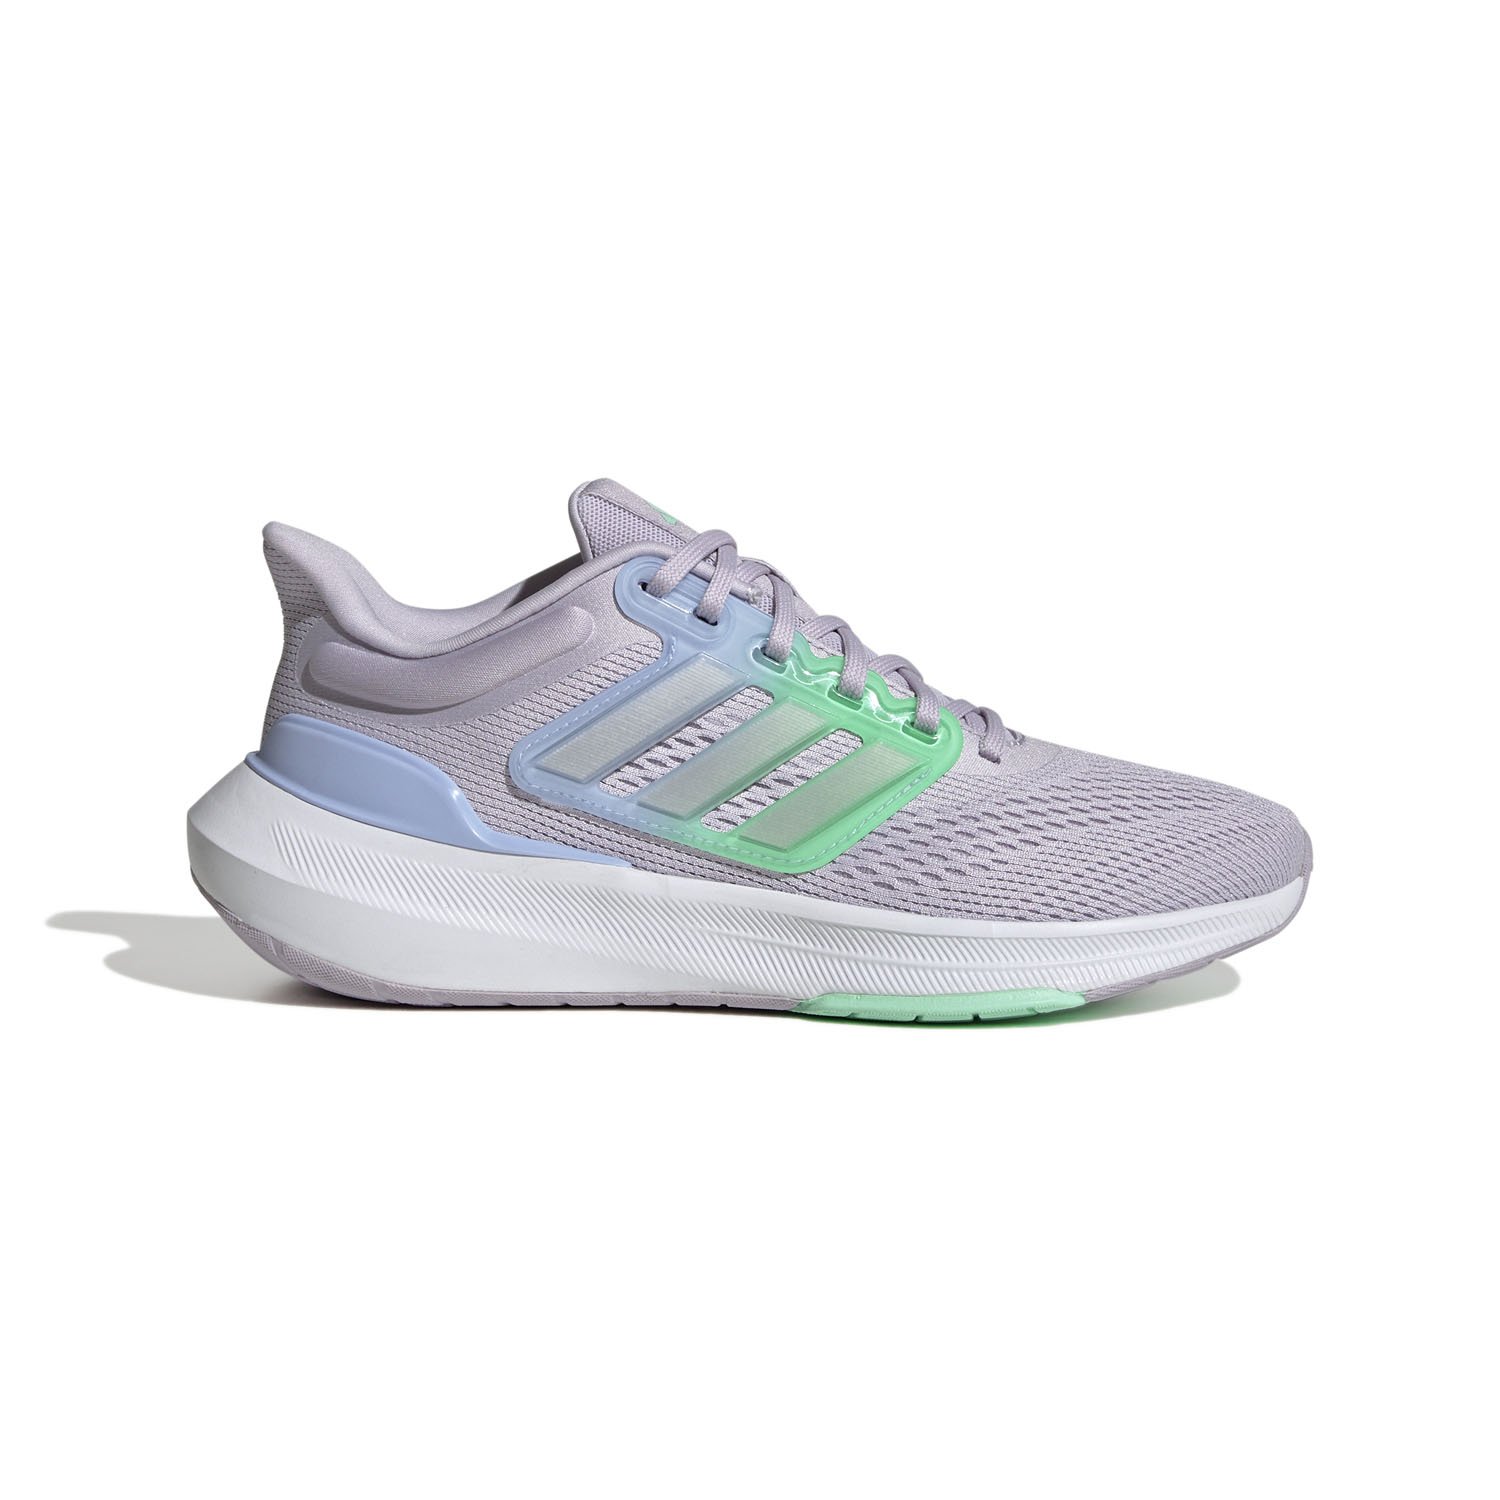 Adidas Ultrabounce Kadın Koşu Ayakkabısı - Gri - 1